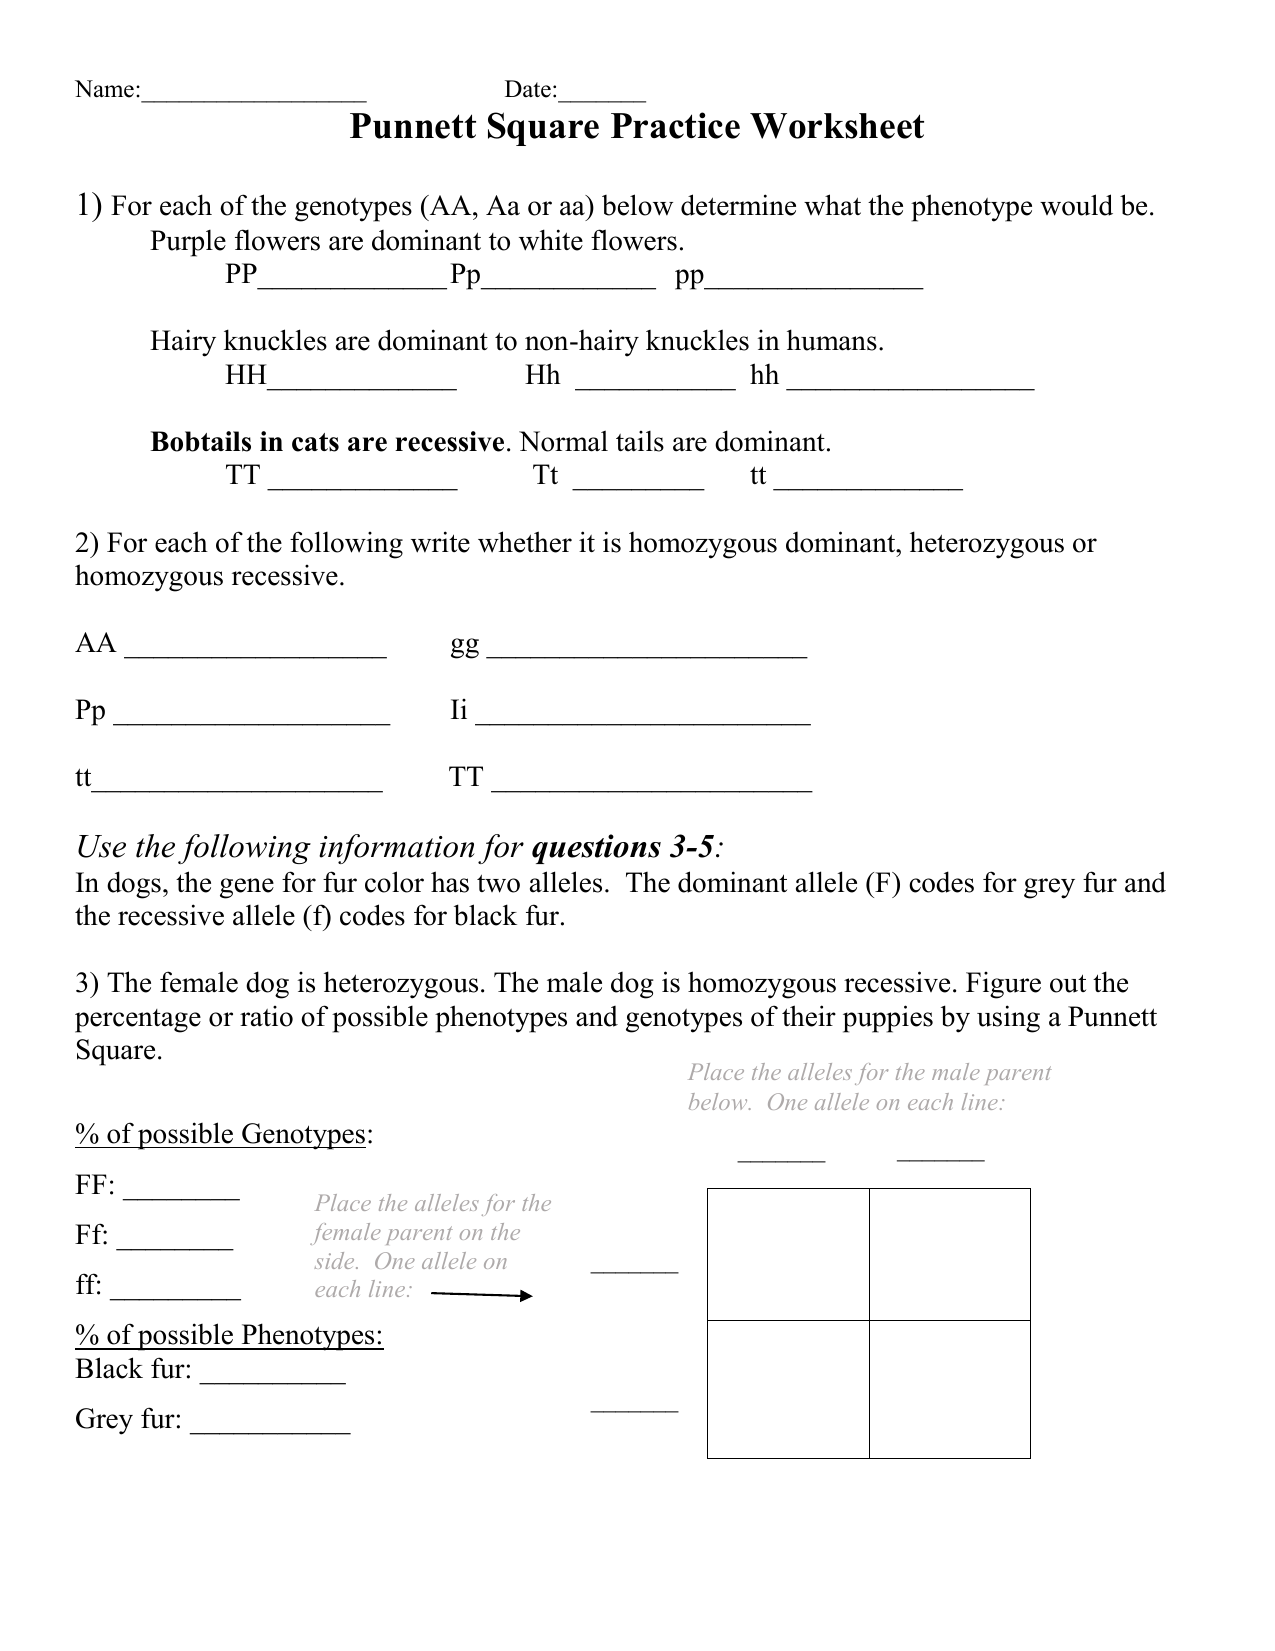 Punnett Square Practice Worksheet (Edited) Intended For Punnett Square Practice Worksheet